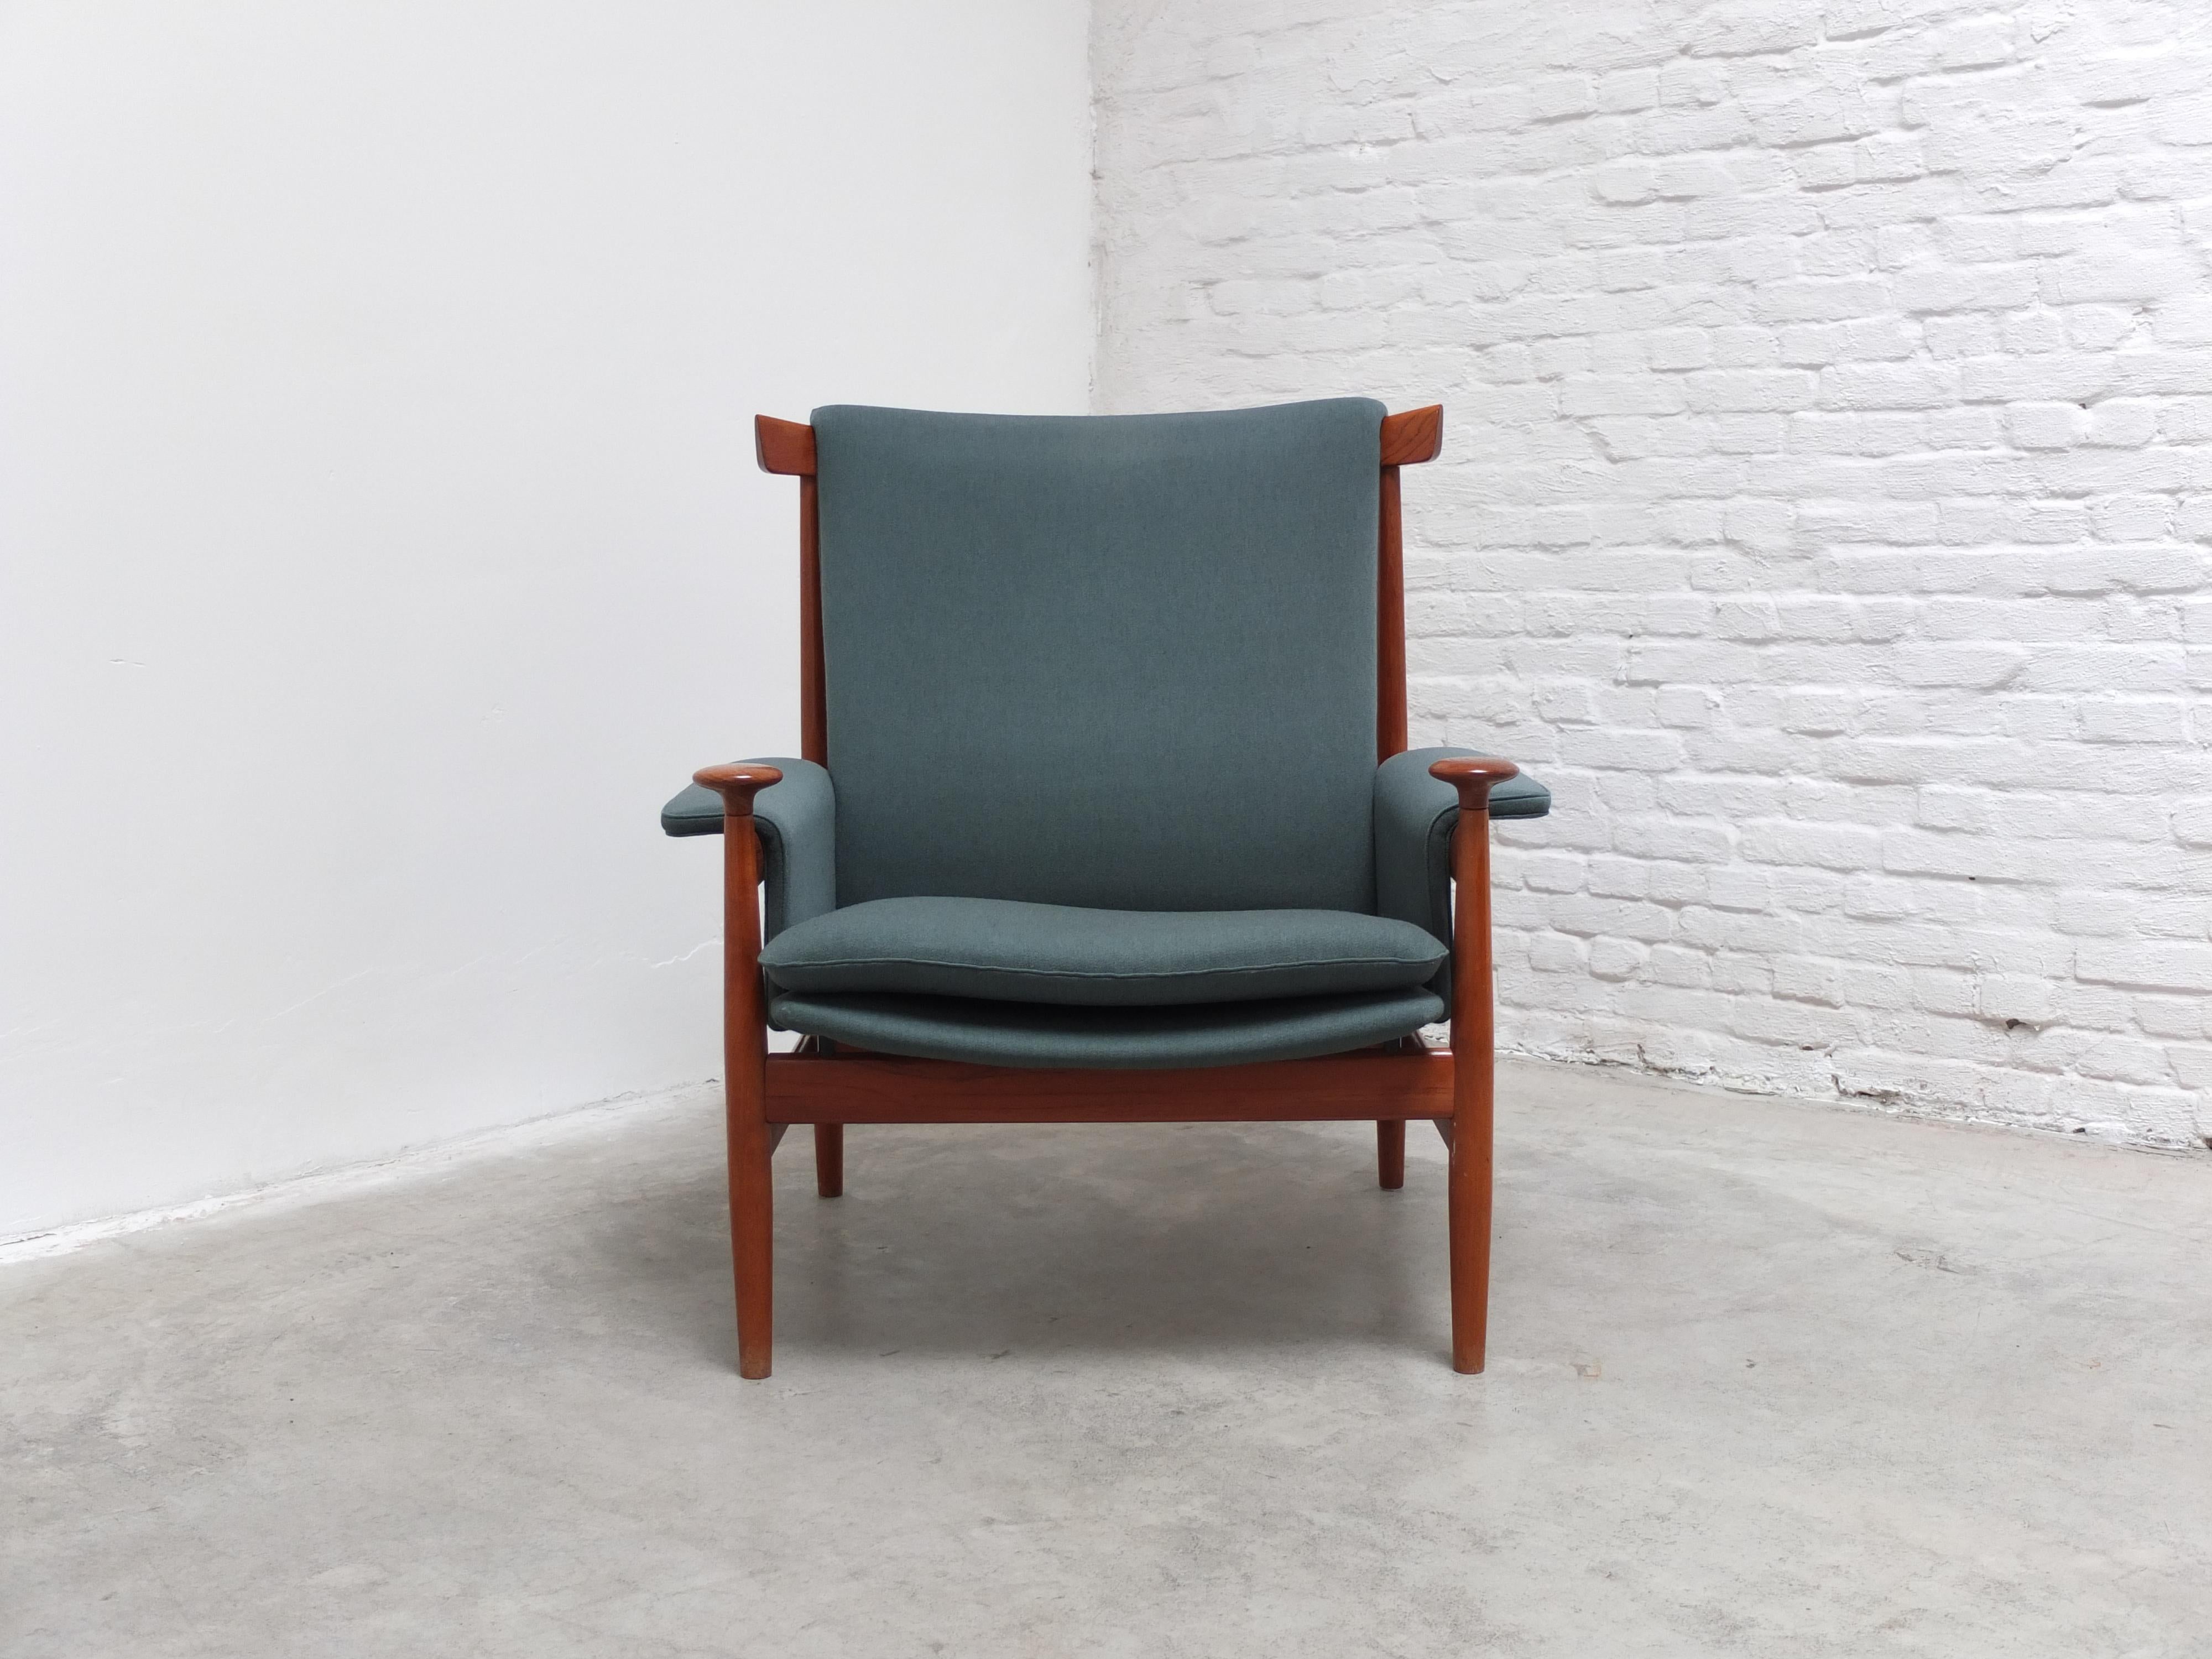 Rare chaise longue 'Bwana' conçue par Finn Juhls en 1962. Il s'agit d'une production très précoce de France and Condit en parfait état d'origine. Le cadre est en teck massif et présente des détails exceptionnels tels que le dossier sculpté et les